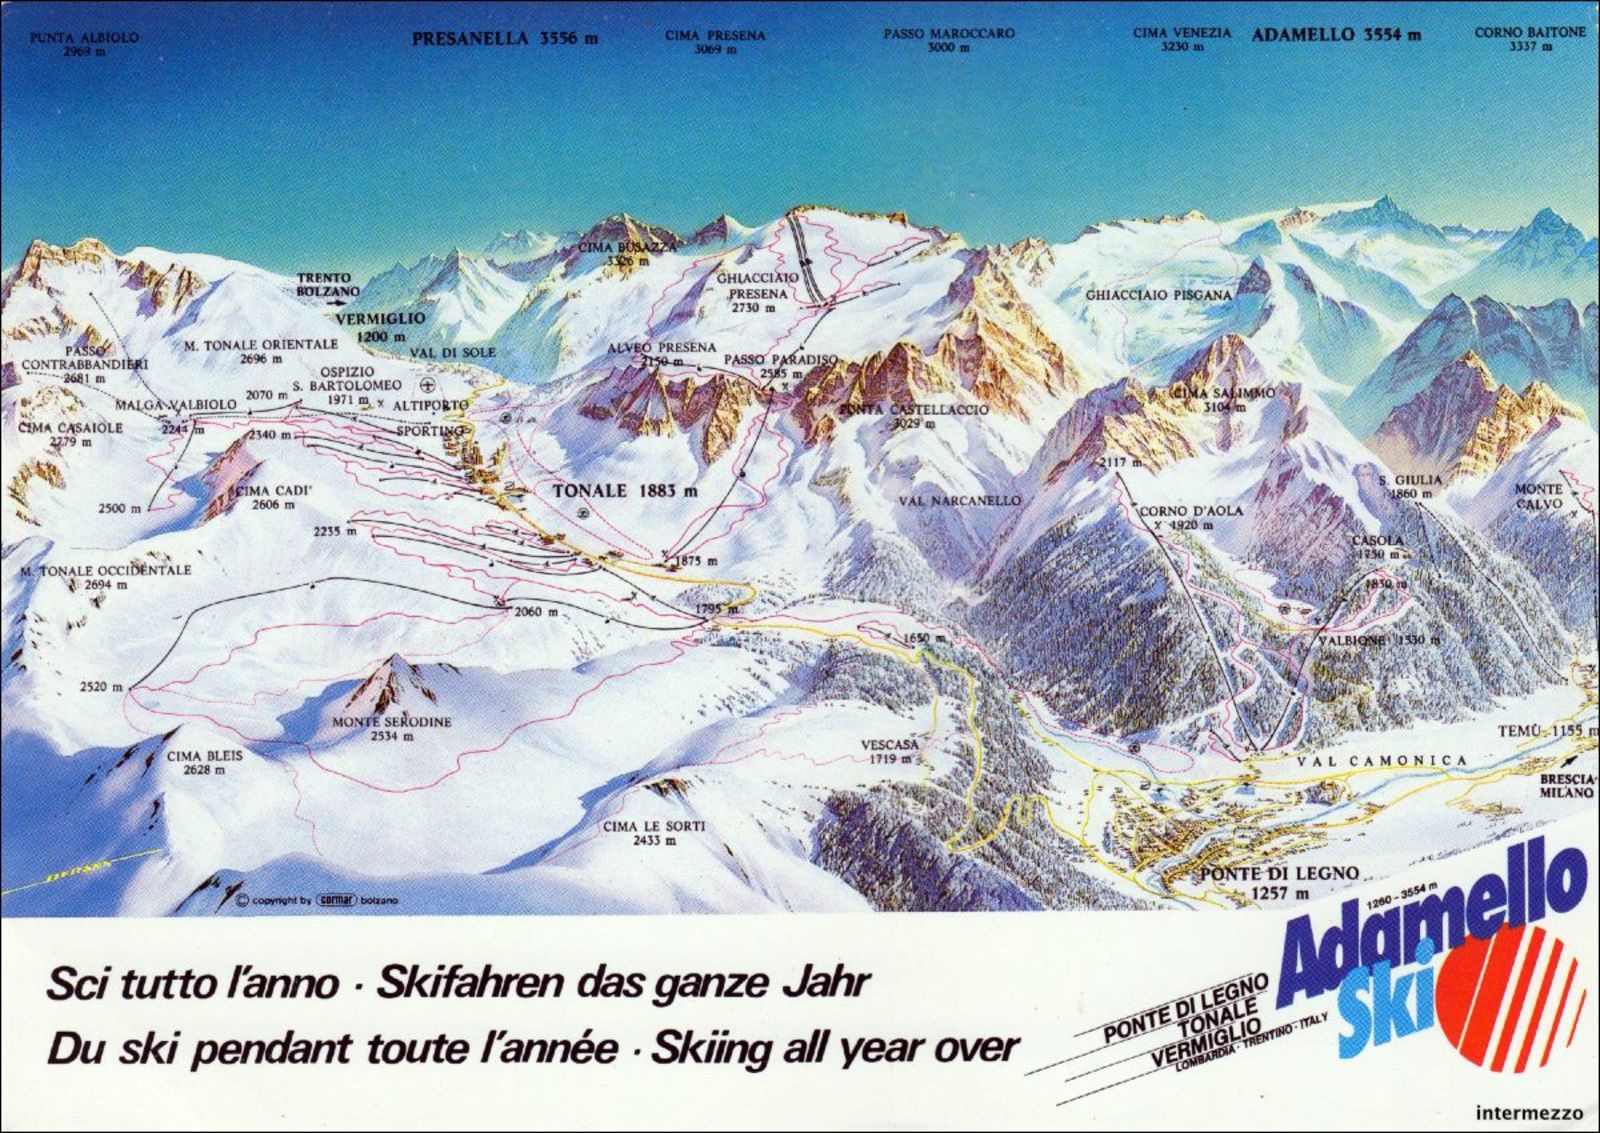 Collegamento Pejo - Passo Tonale via Passo Contrabbandieri | SkiForum -  Sci, turismo, sport e passione